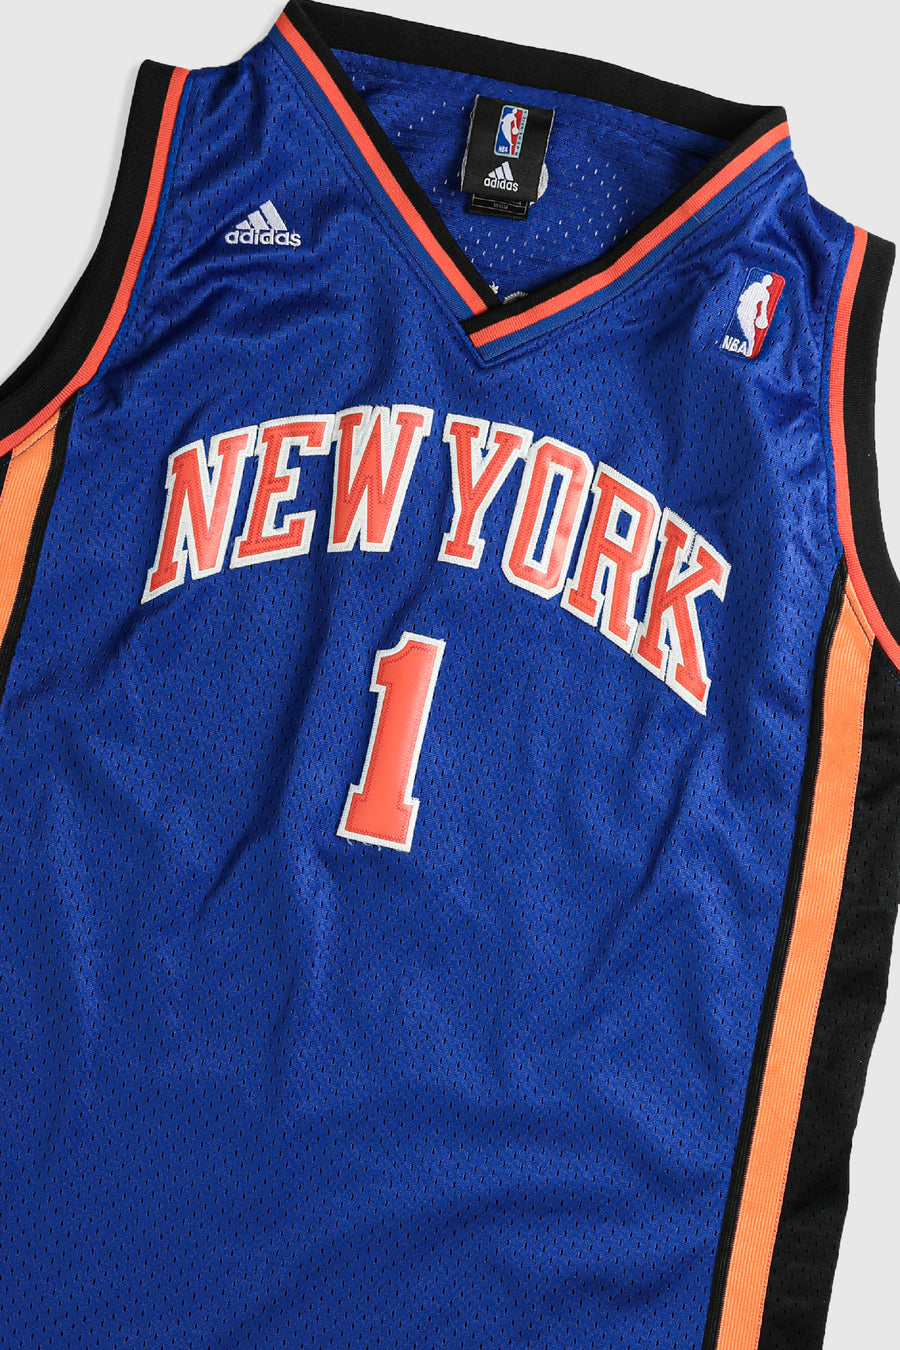 Vintage Knicks Jersey